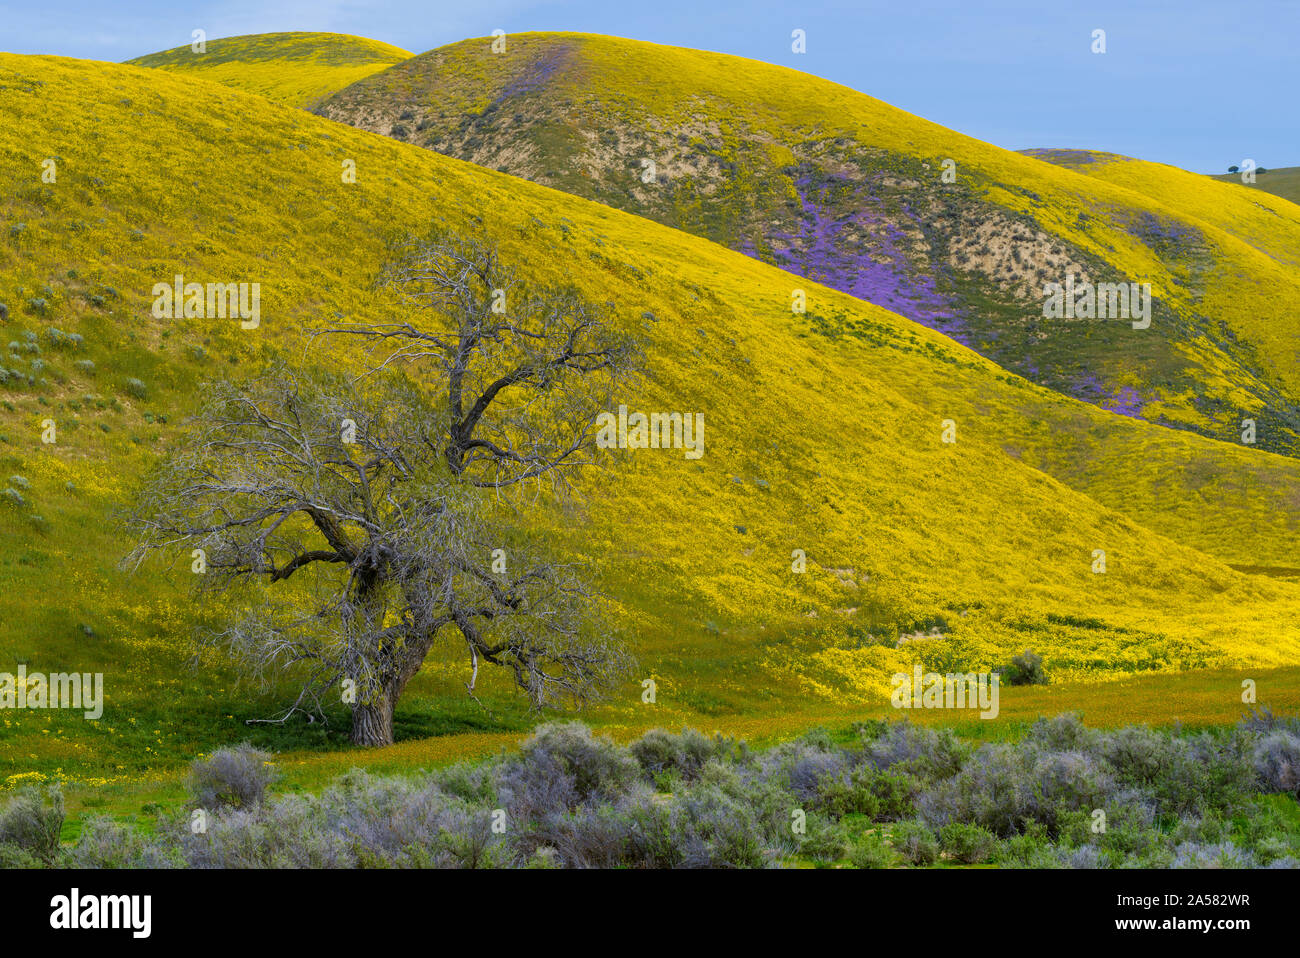 Landschaft mit sanften Hügeln und gelbe Wildblumen, Temblor, Carrizo Plain National Monument, Kalifornien, USA Stockfoto